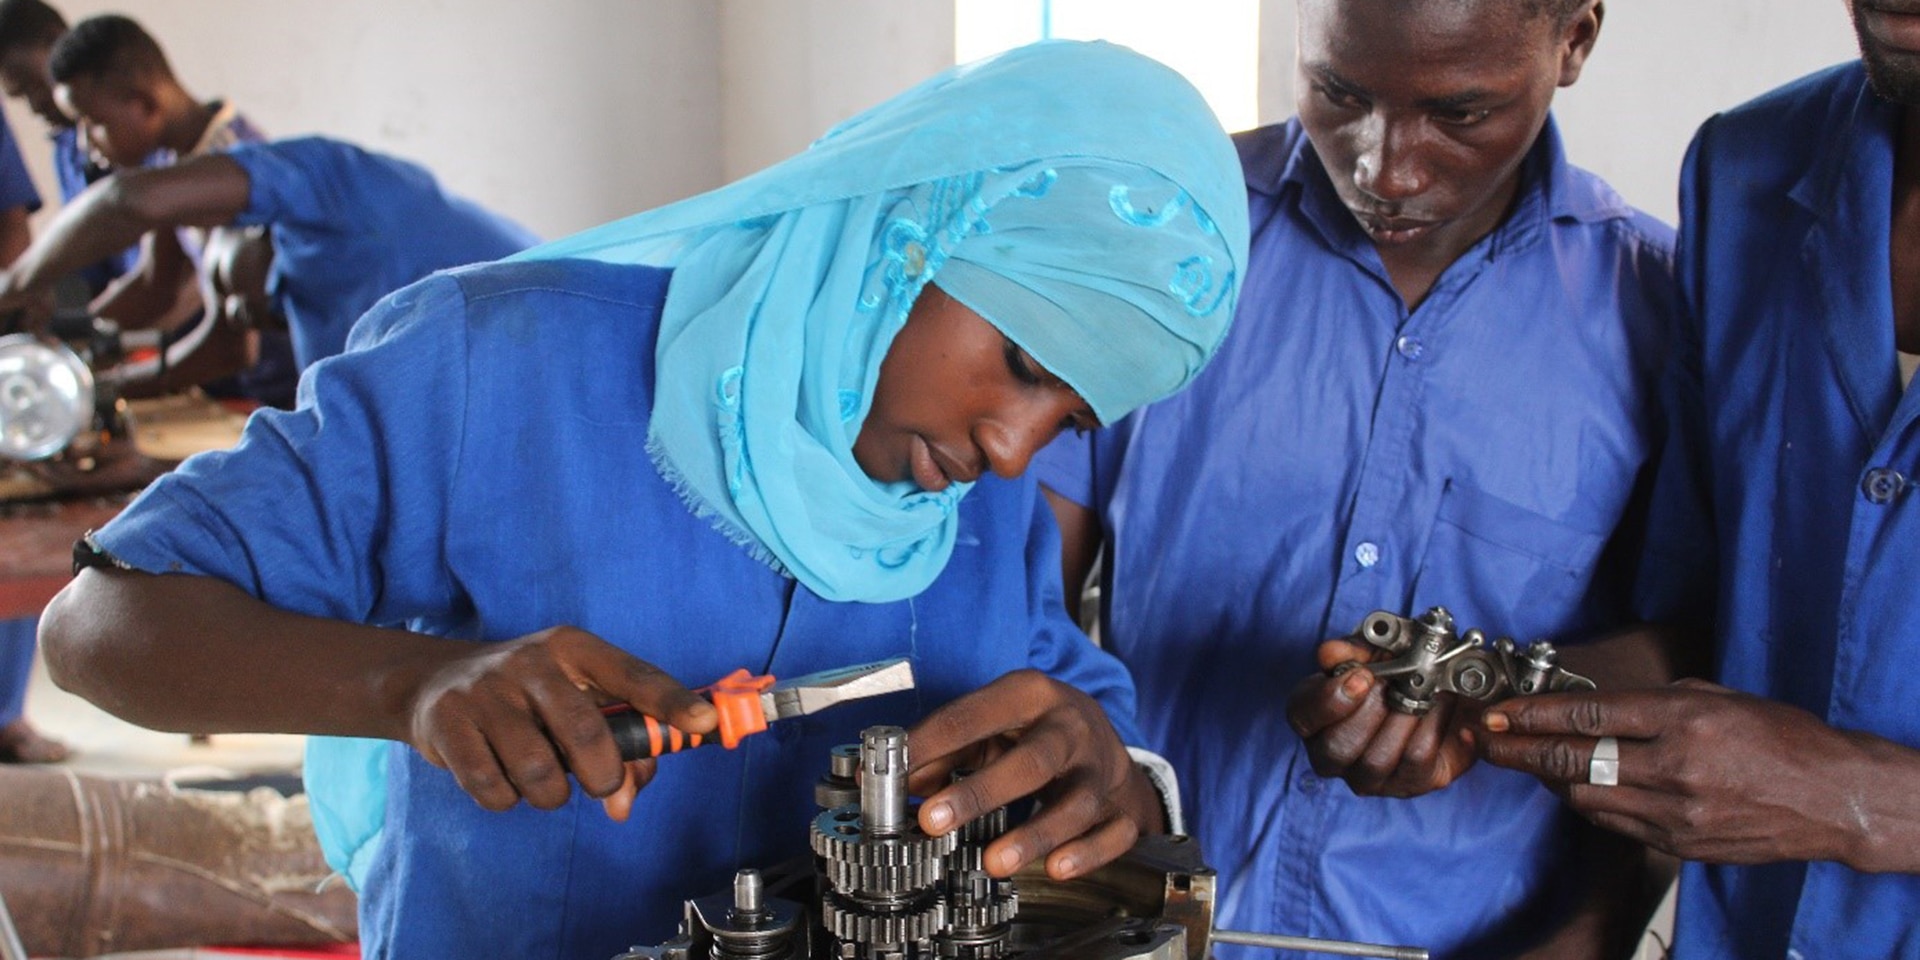 Une jeune fille portant le foulard travaille dans un atelier d’apprentissage en mécanique, sous les yeux de deux garçons.